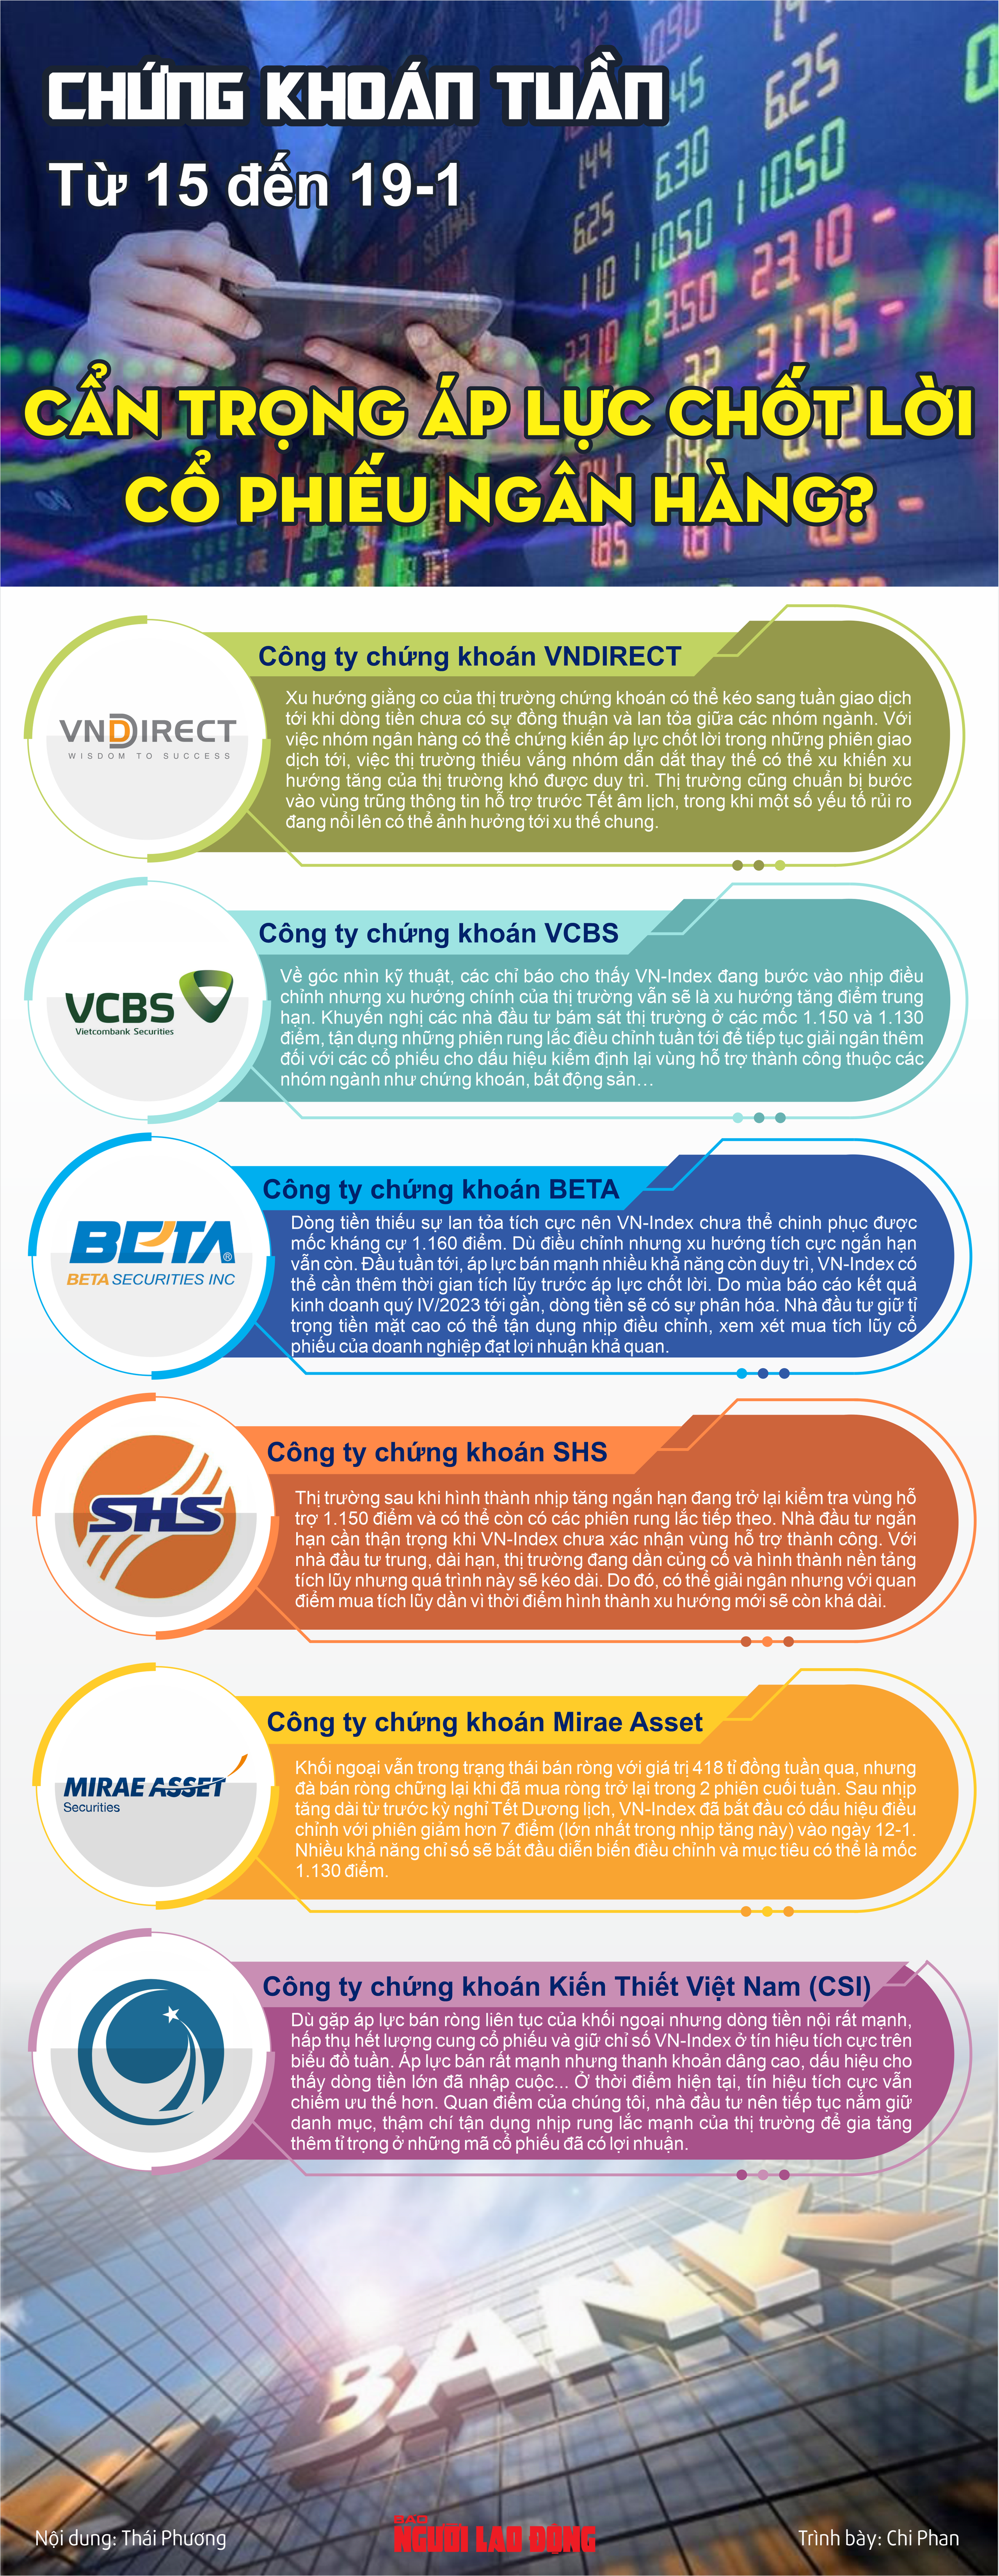 Infographic: Chứng khoán tuần tới (15 đến 19-1): Cẩn trọng áp lực chốt lời cổ phiếu ngân hàng?